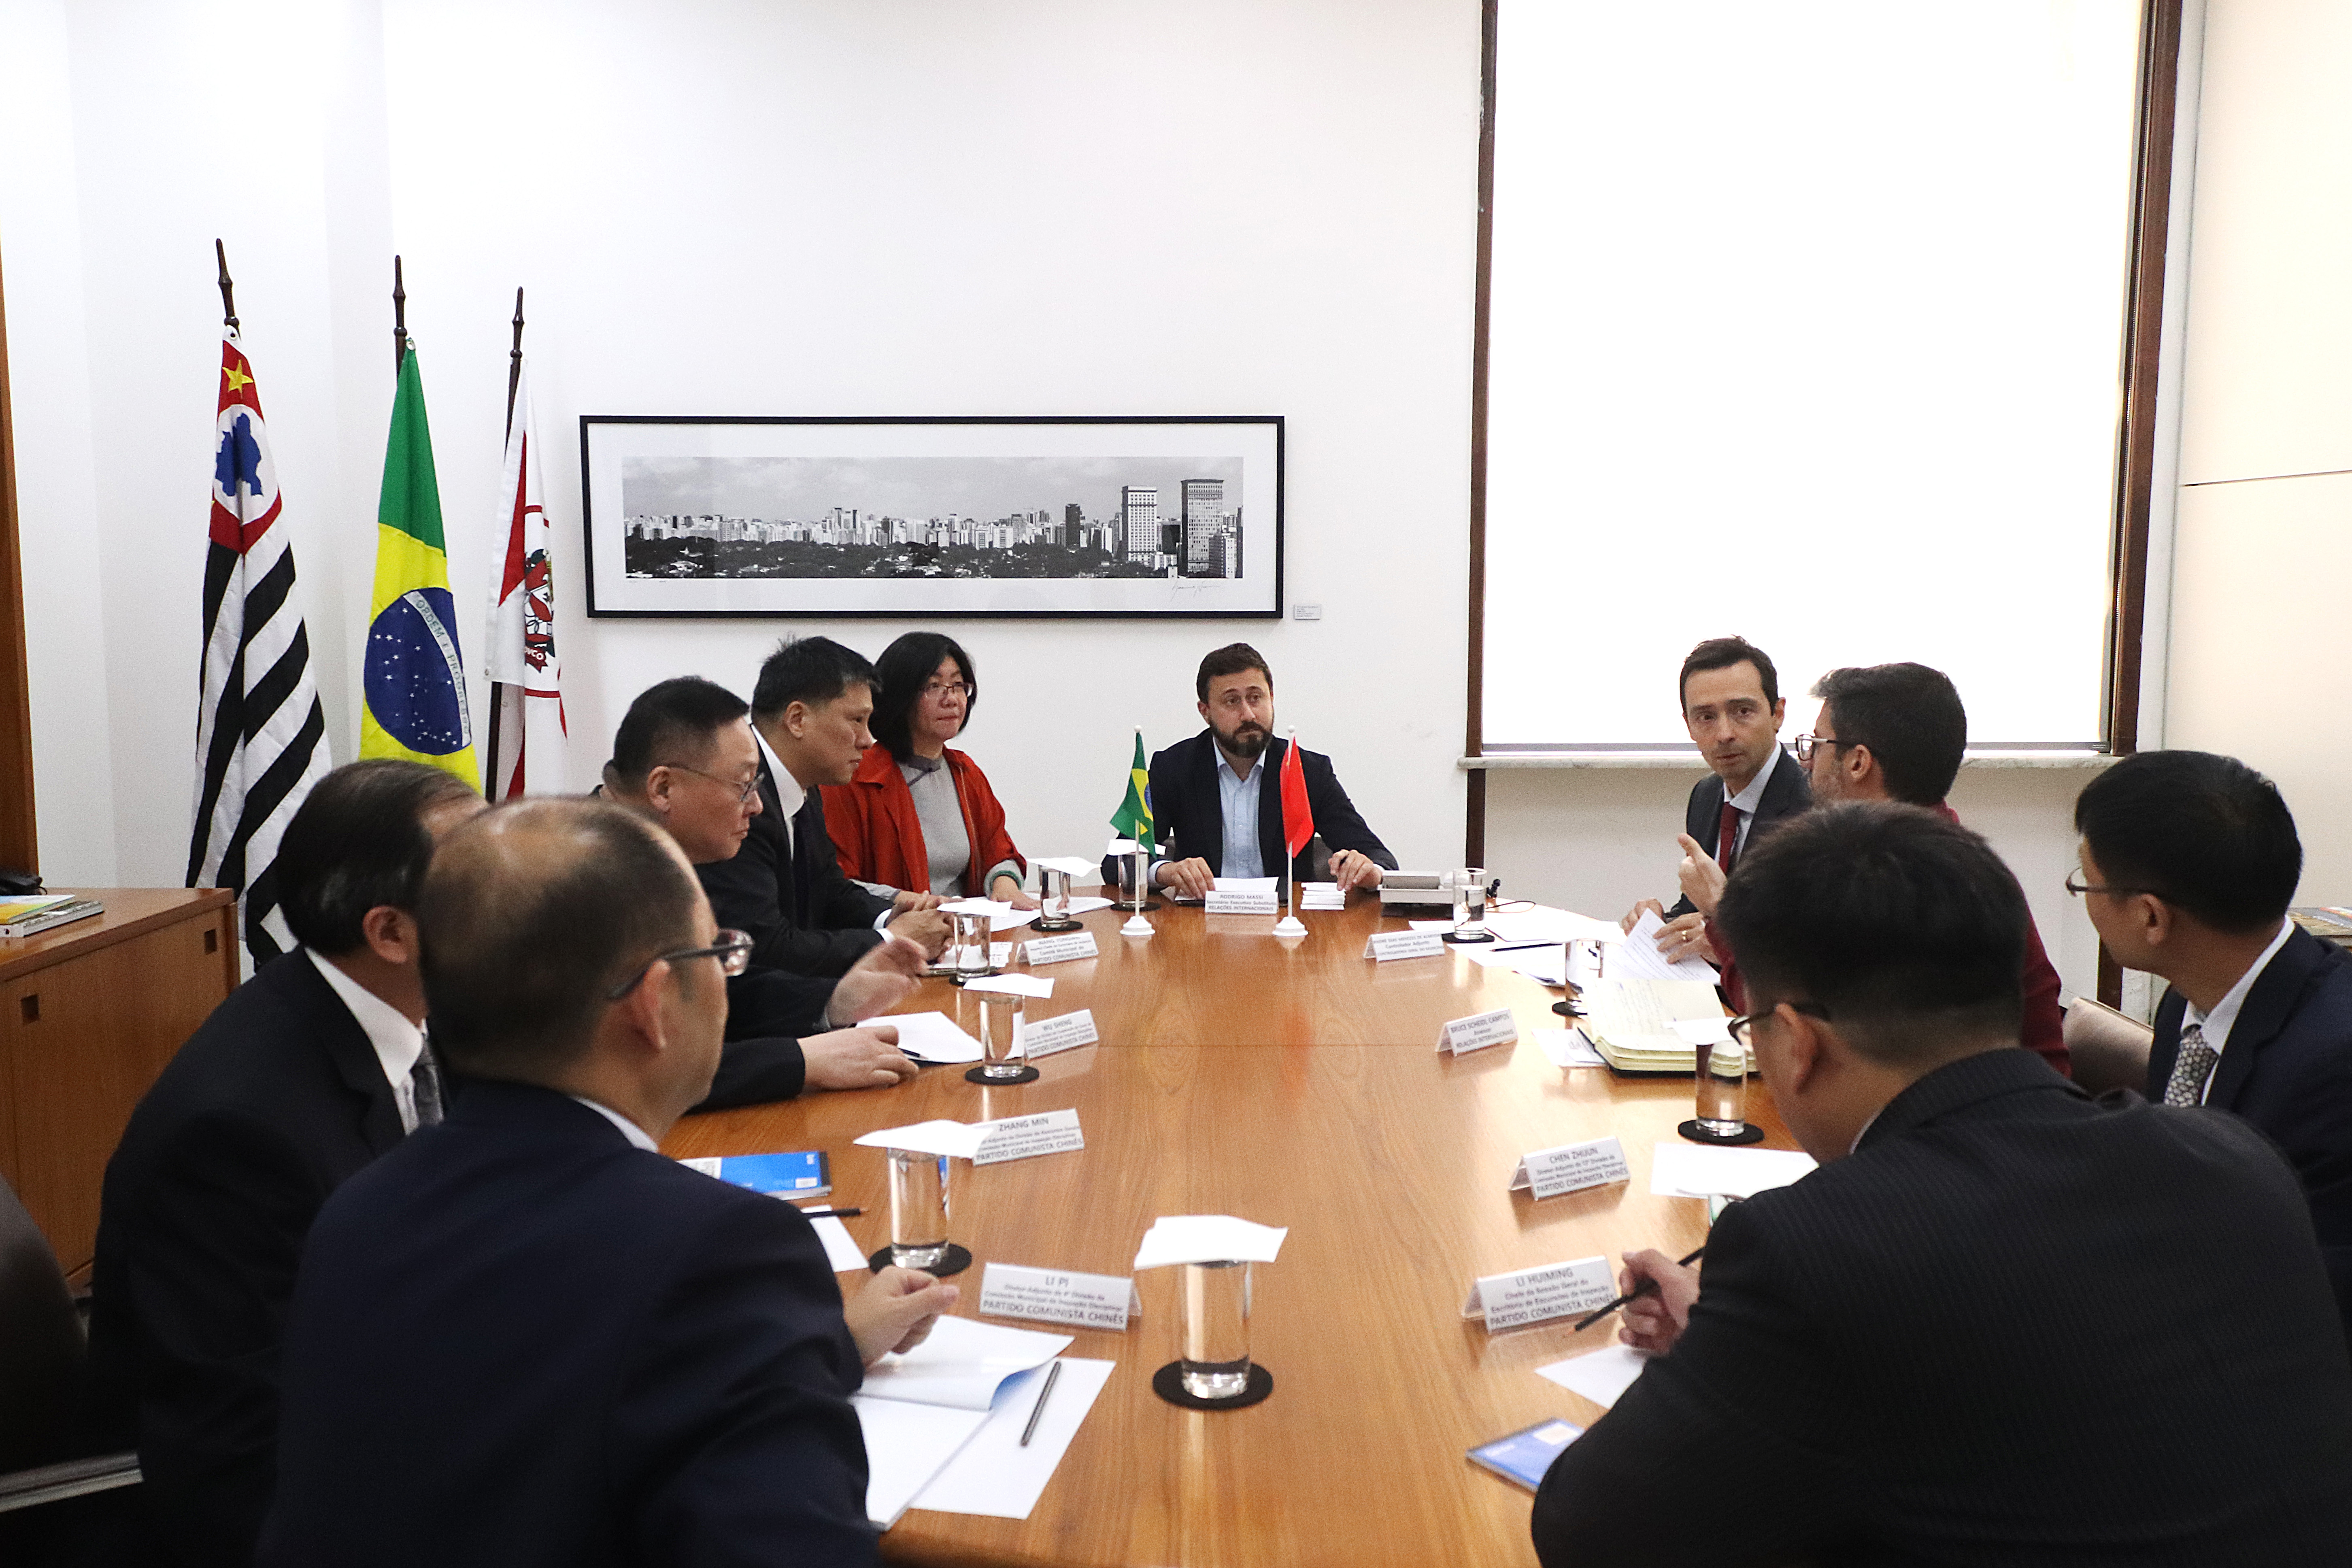 Delegação de Xangai e representantes da Prefeitura se reúnem na mesa de reuniões da Coordenadoria de Relações Internacionais.